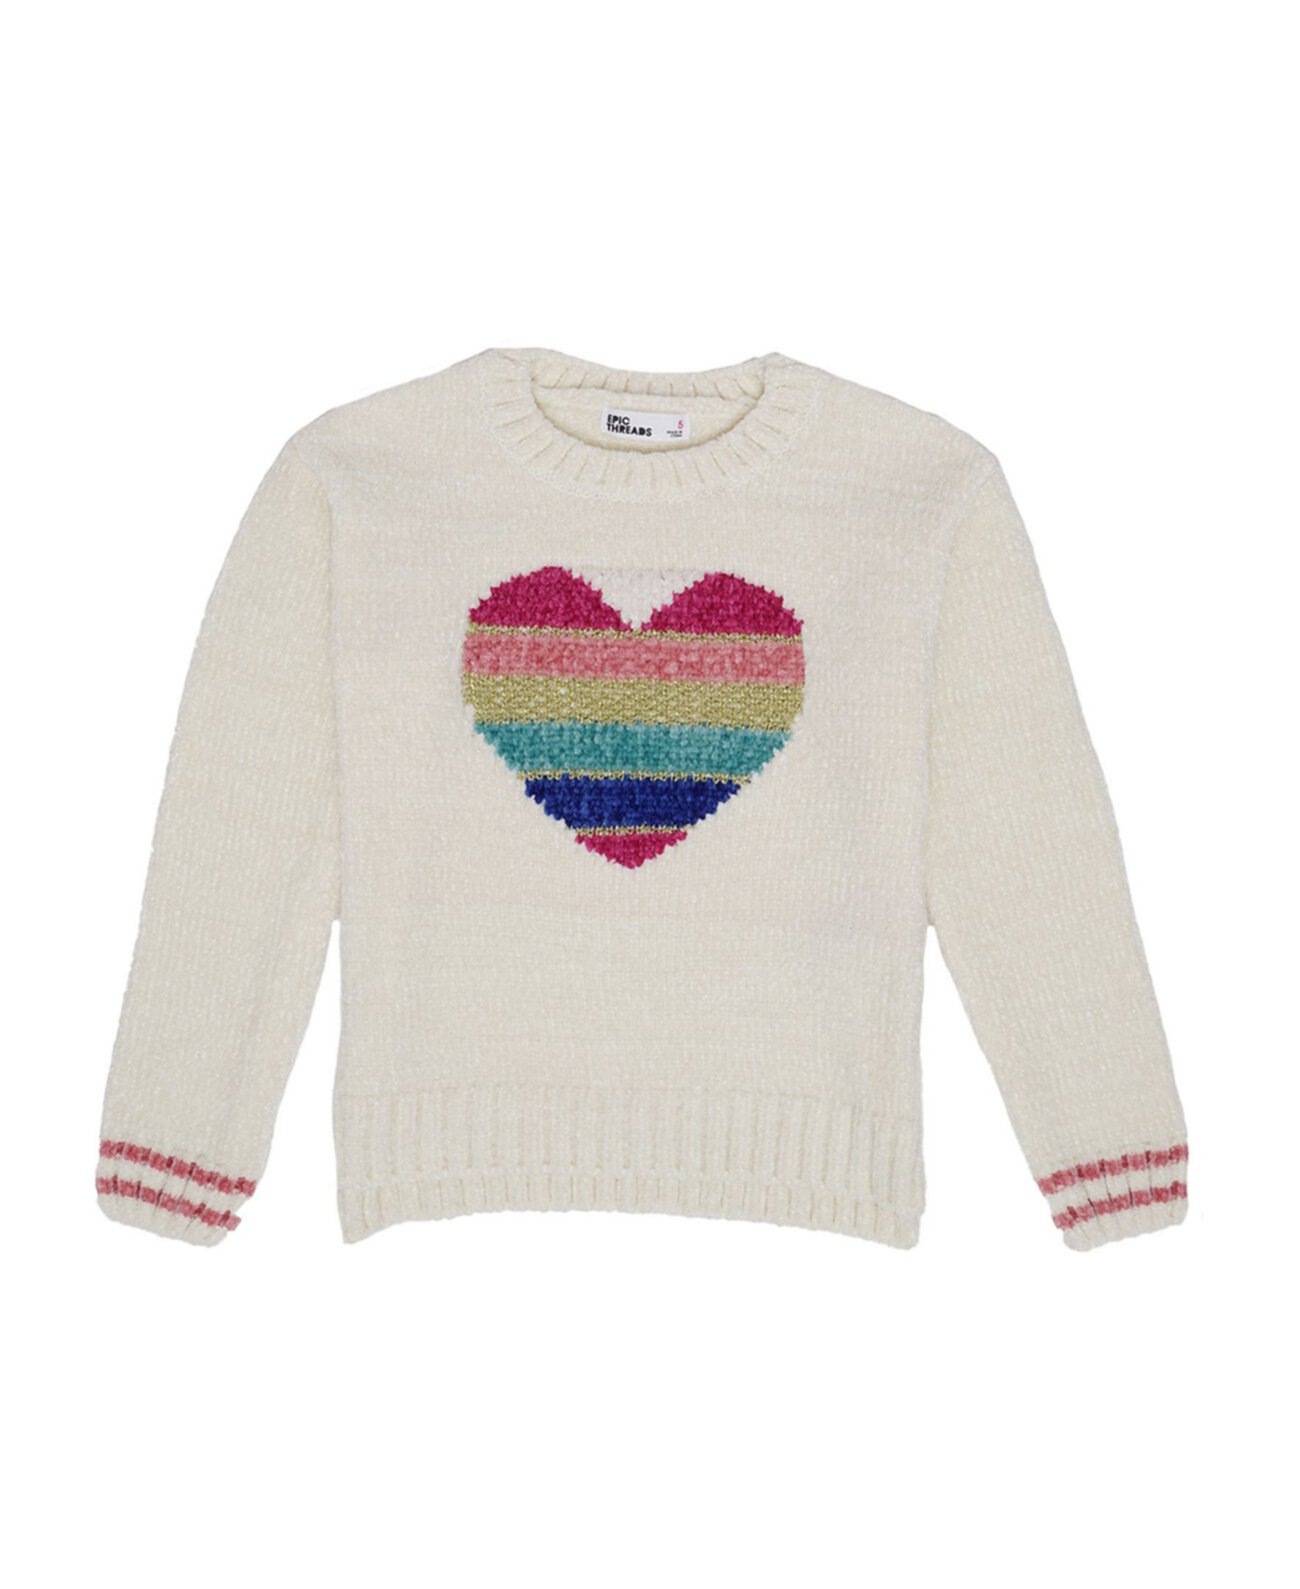 Вязаный свитер Little Girls с рисунком радуги и сердца Epic Threads